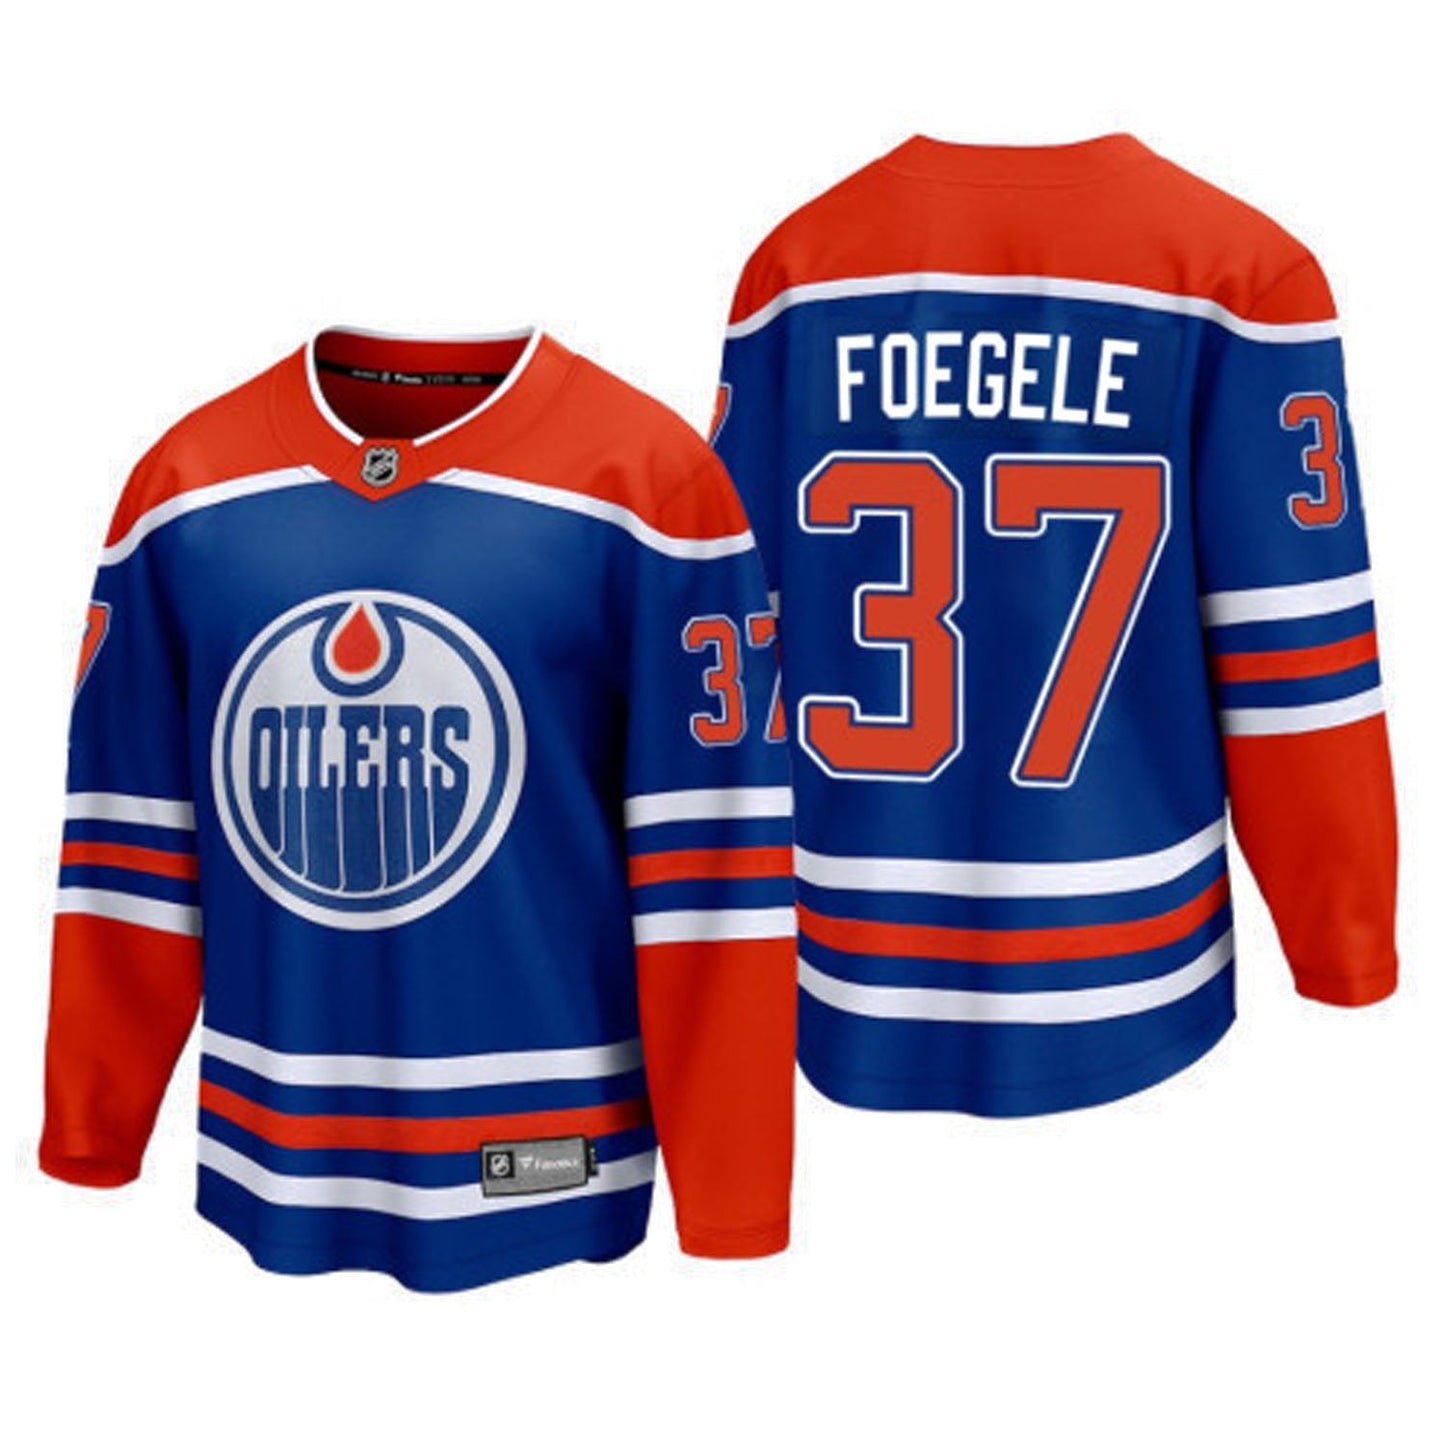 NHL Warren Foegele Edmonton Oilers 37 Jersey